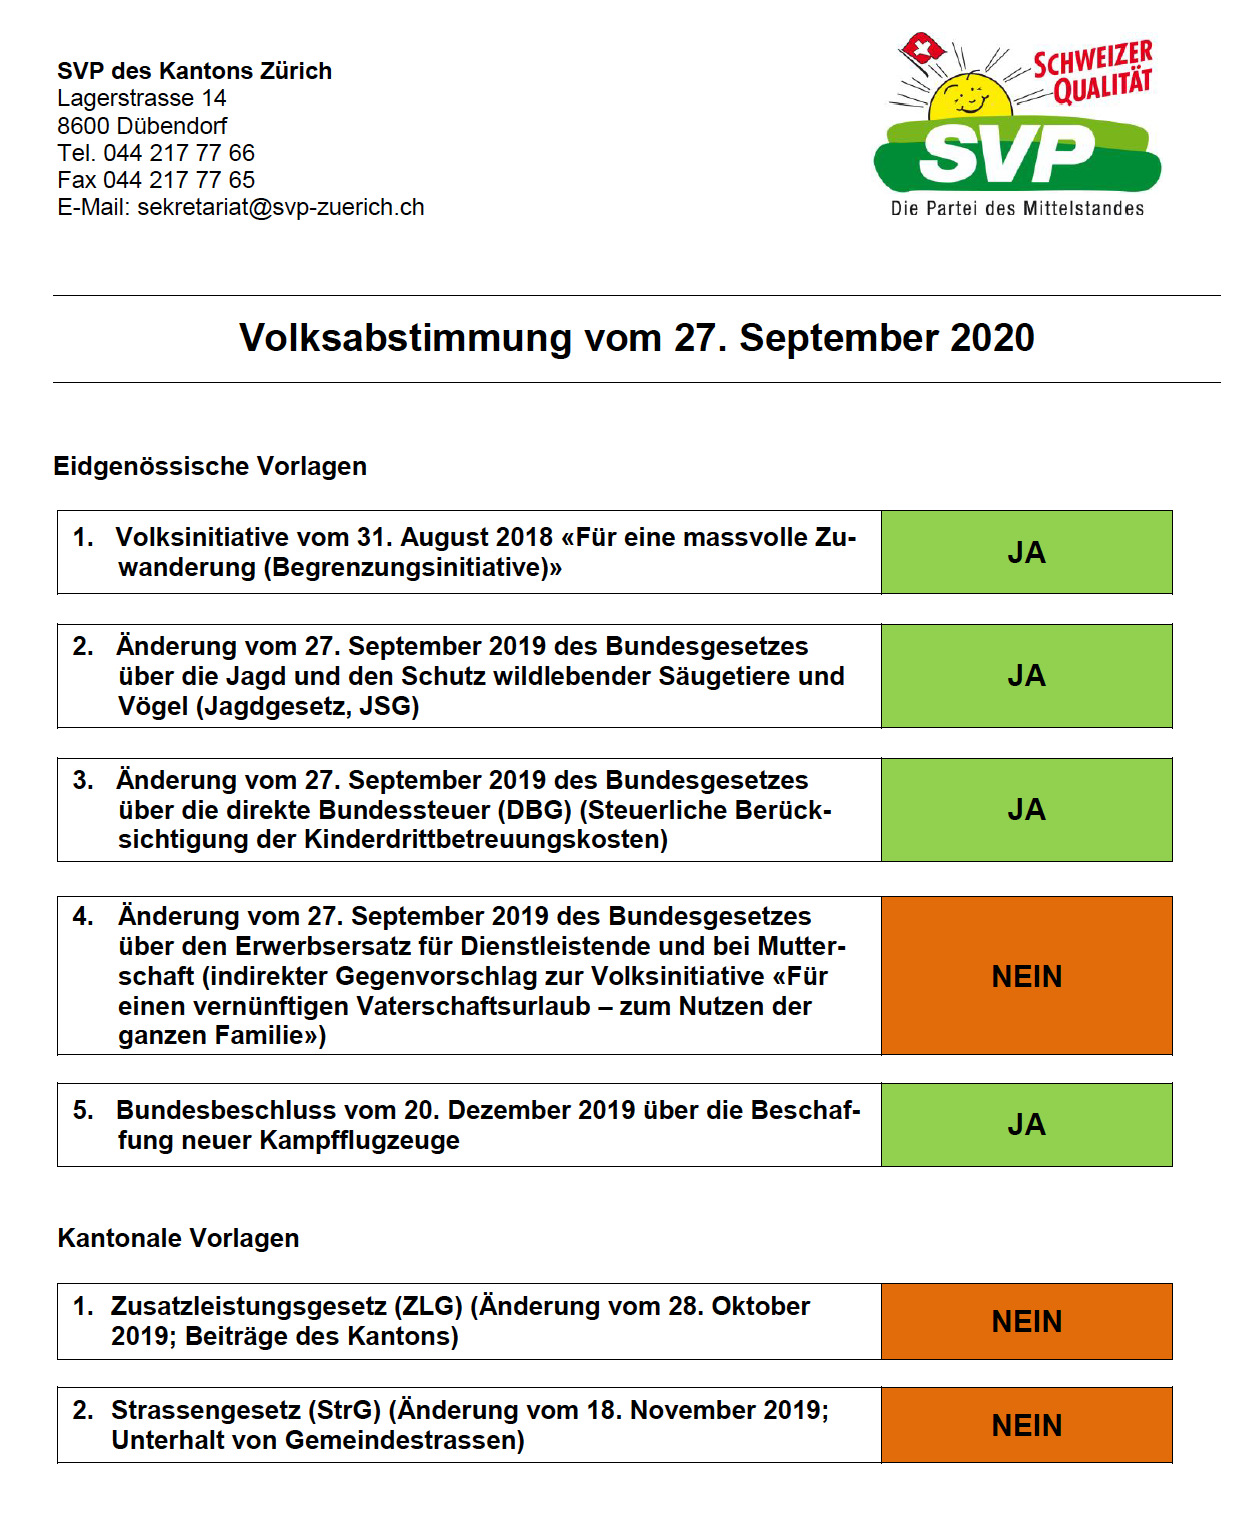 Parolen der SVP des Kantons Zürich für den Super-Abstimmungs-Sonntag vom 27. September 2020